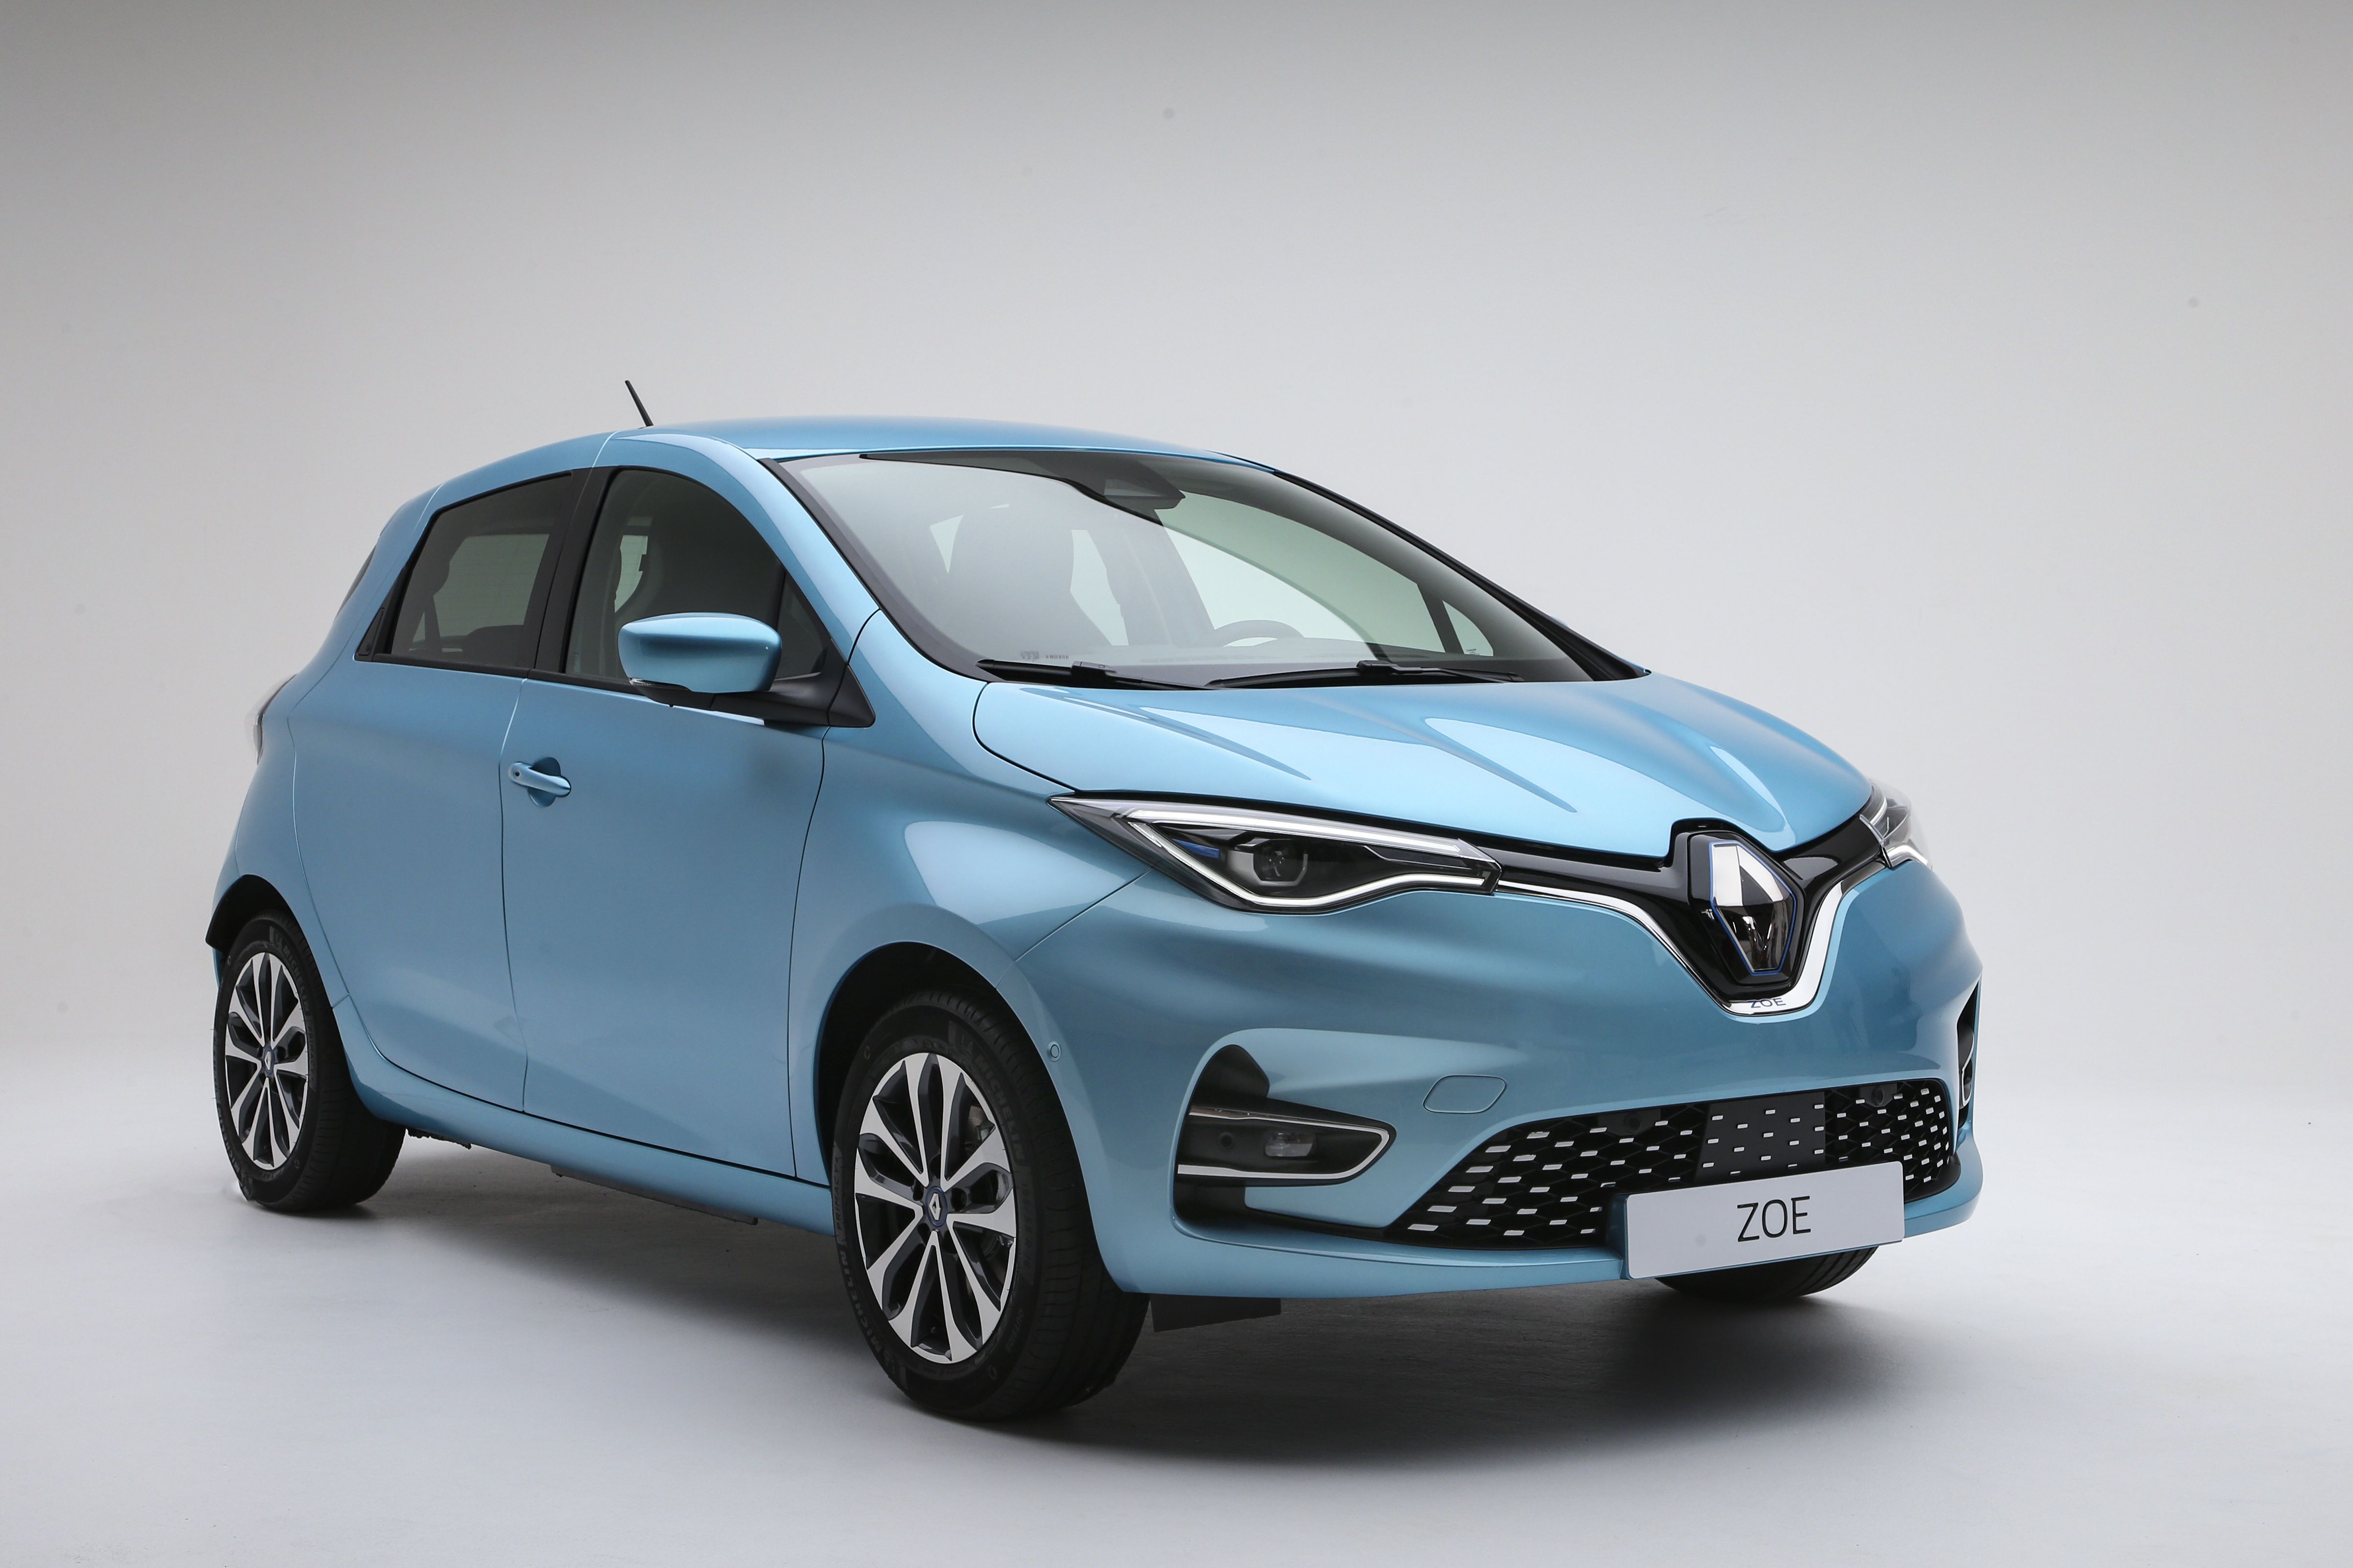 https://www.mein-elektroauto.com/wp-content/uploads/2019/06/Elektroauto-Renault-Zoe-2019-Dritte-Generation.jpg